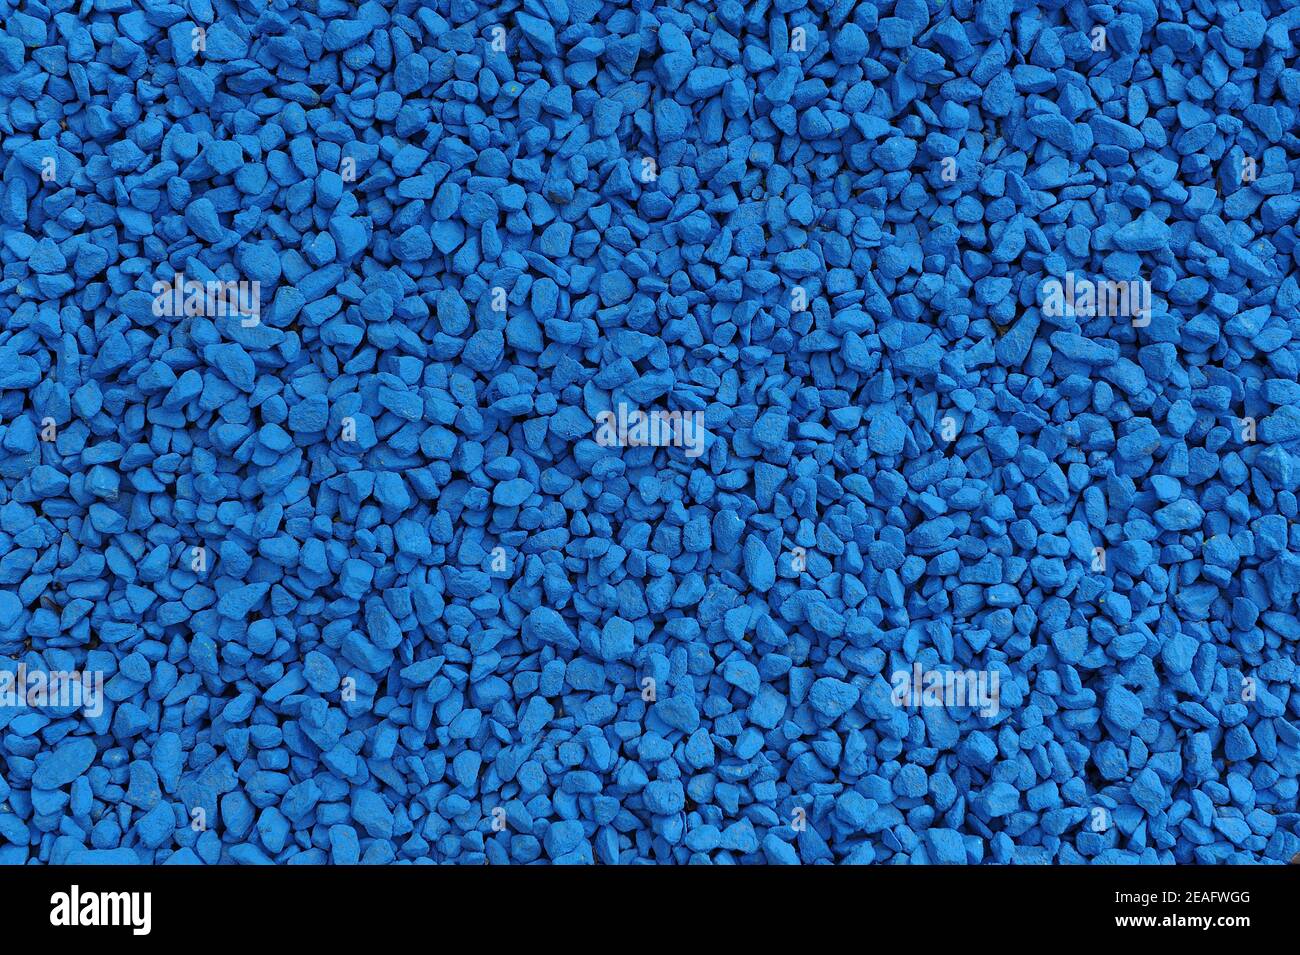 Dekorativer blau lackierter Kies für Gartendekoration und Landschaftsgestaltung Stockfoto